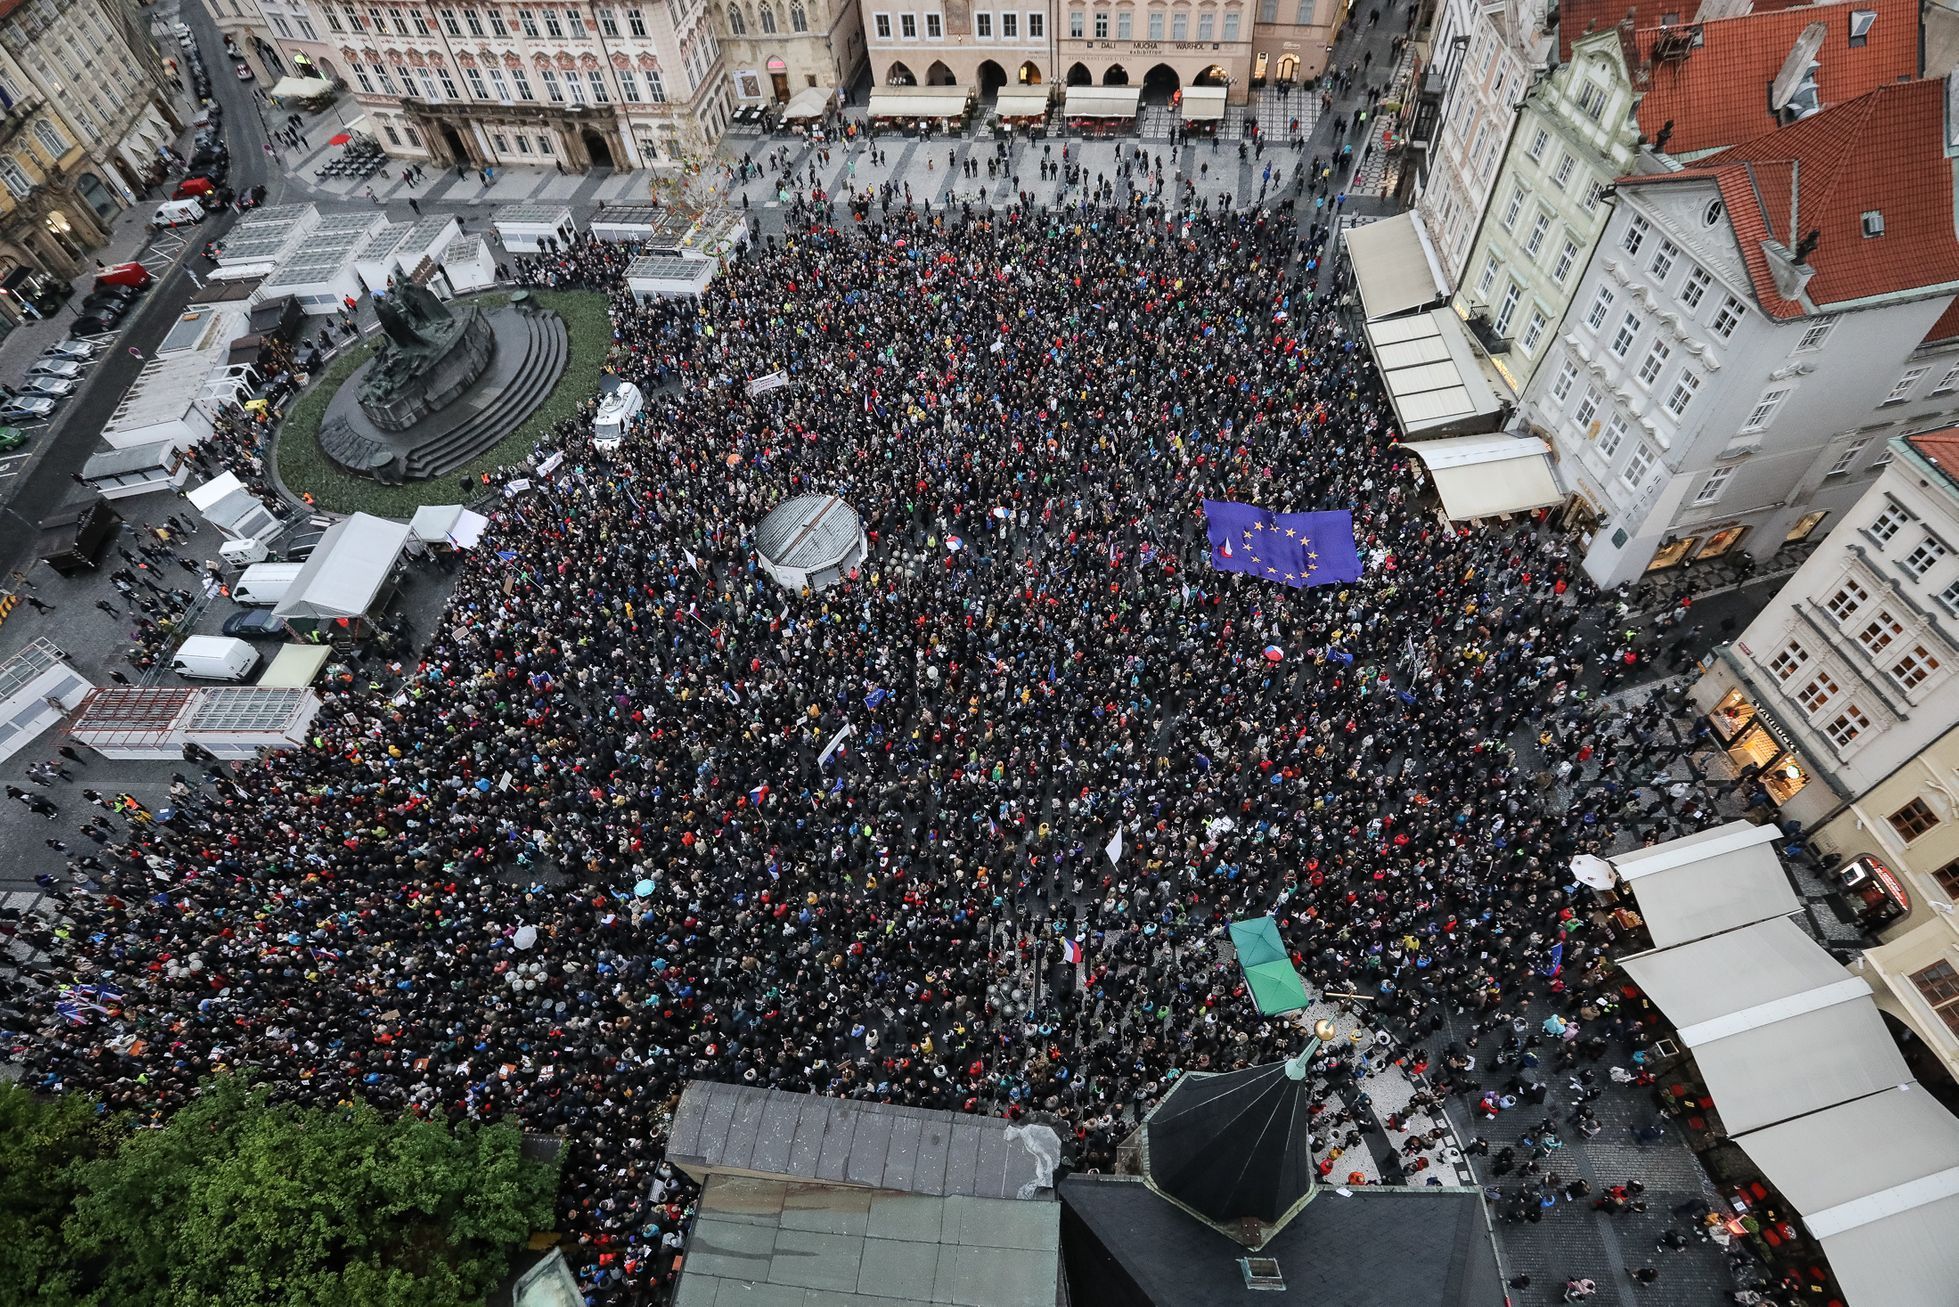 Protest / pochod / demonstrace proti jmenování Marie Benešové ministryní, Milion chvilek pro demokracii, Praha